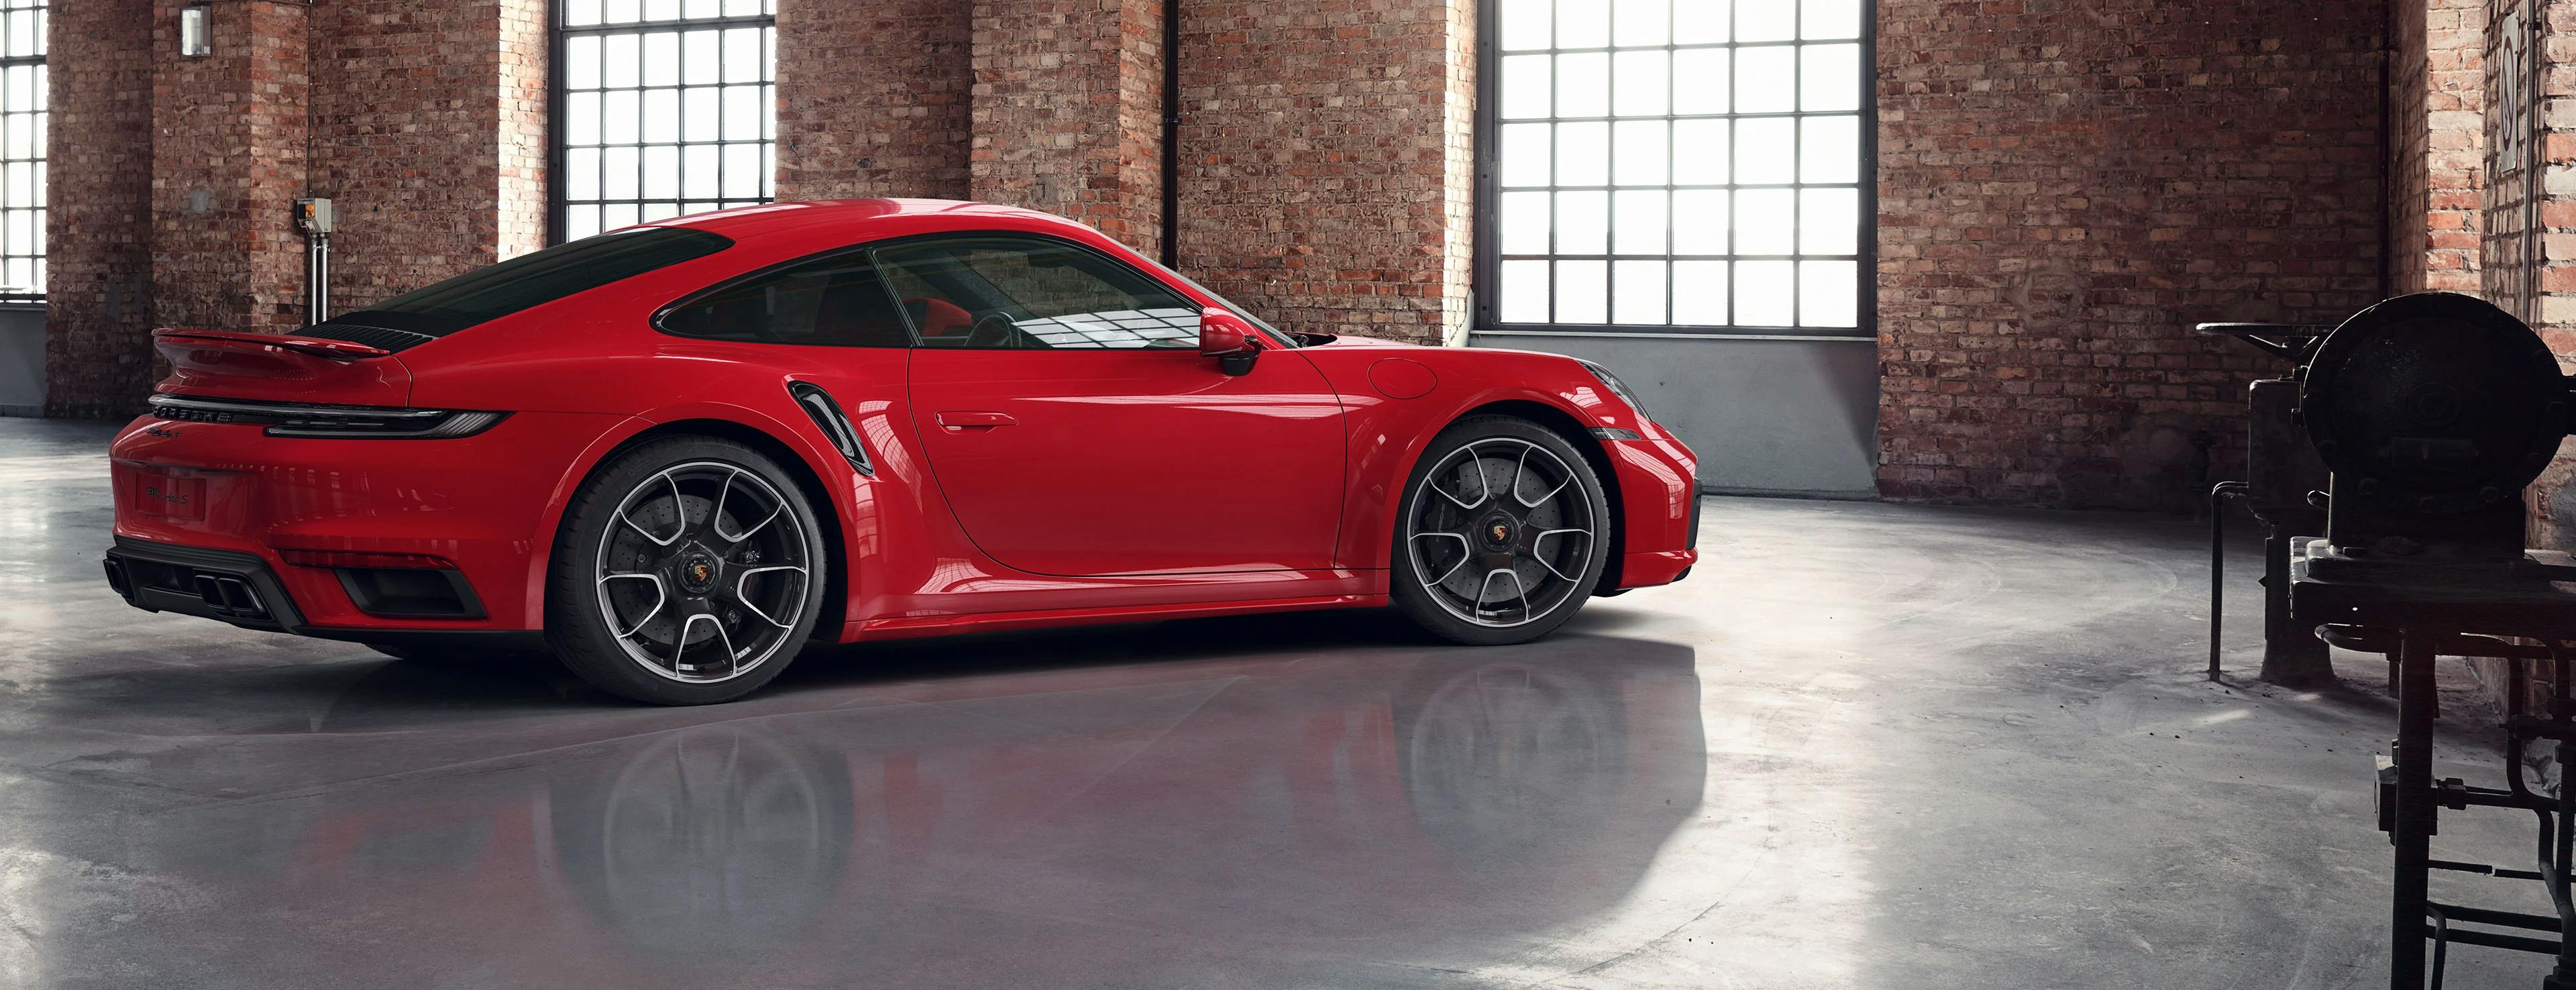 Găsește cele mai surprinzătoare modele de la Porsche pe CautiMasina.ro